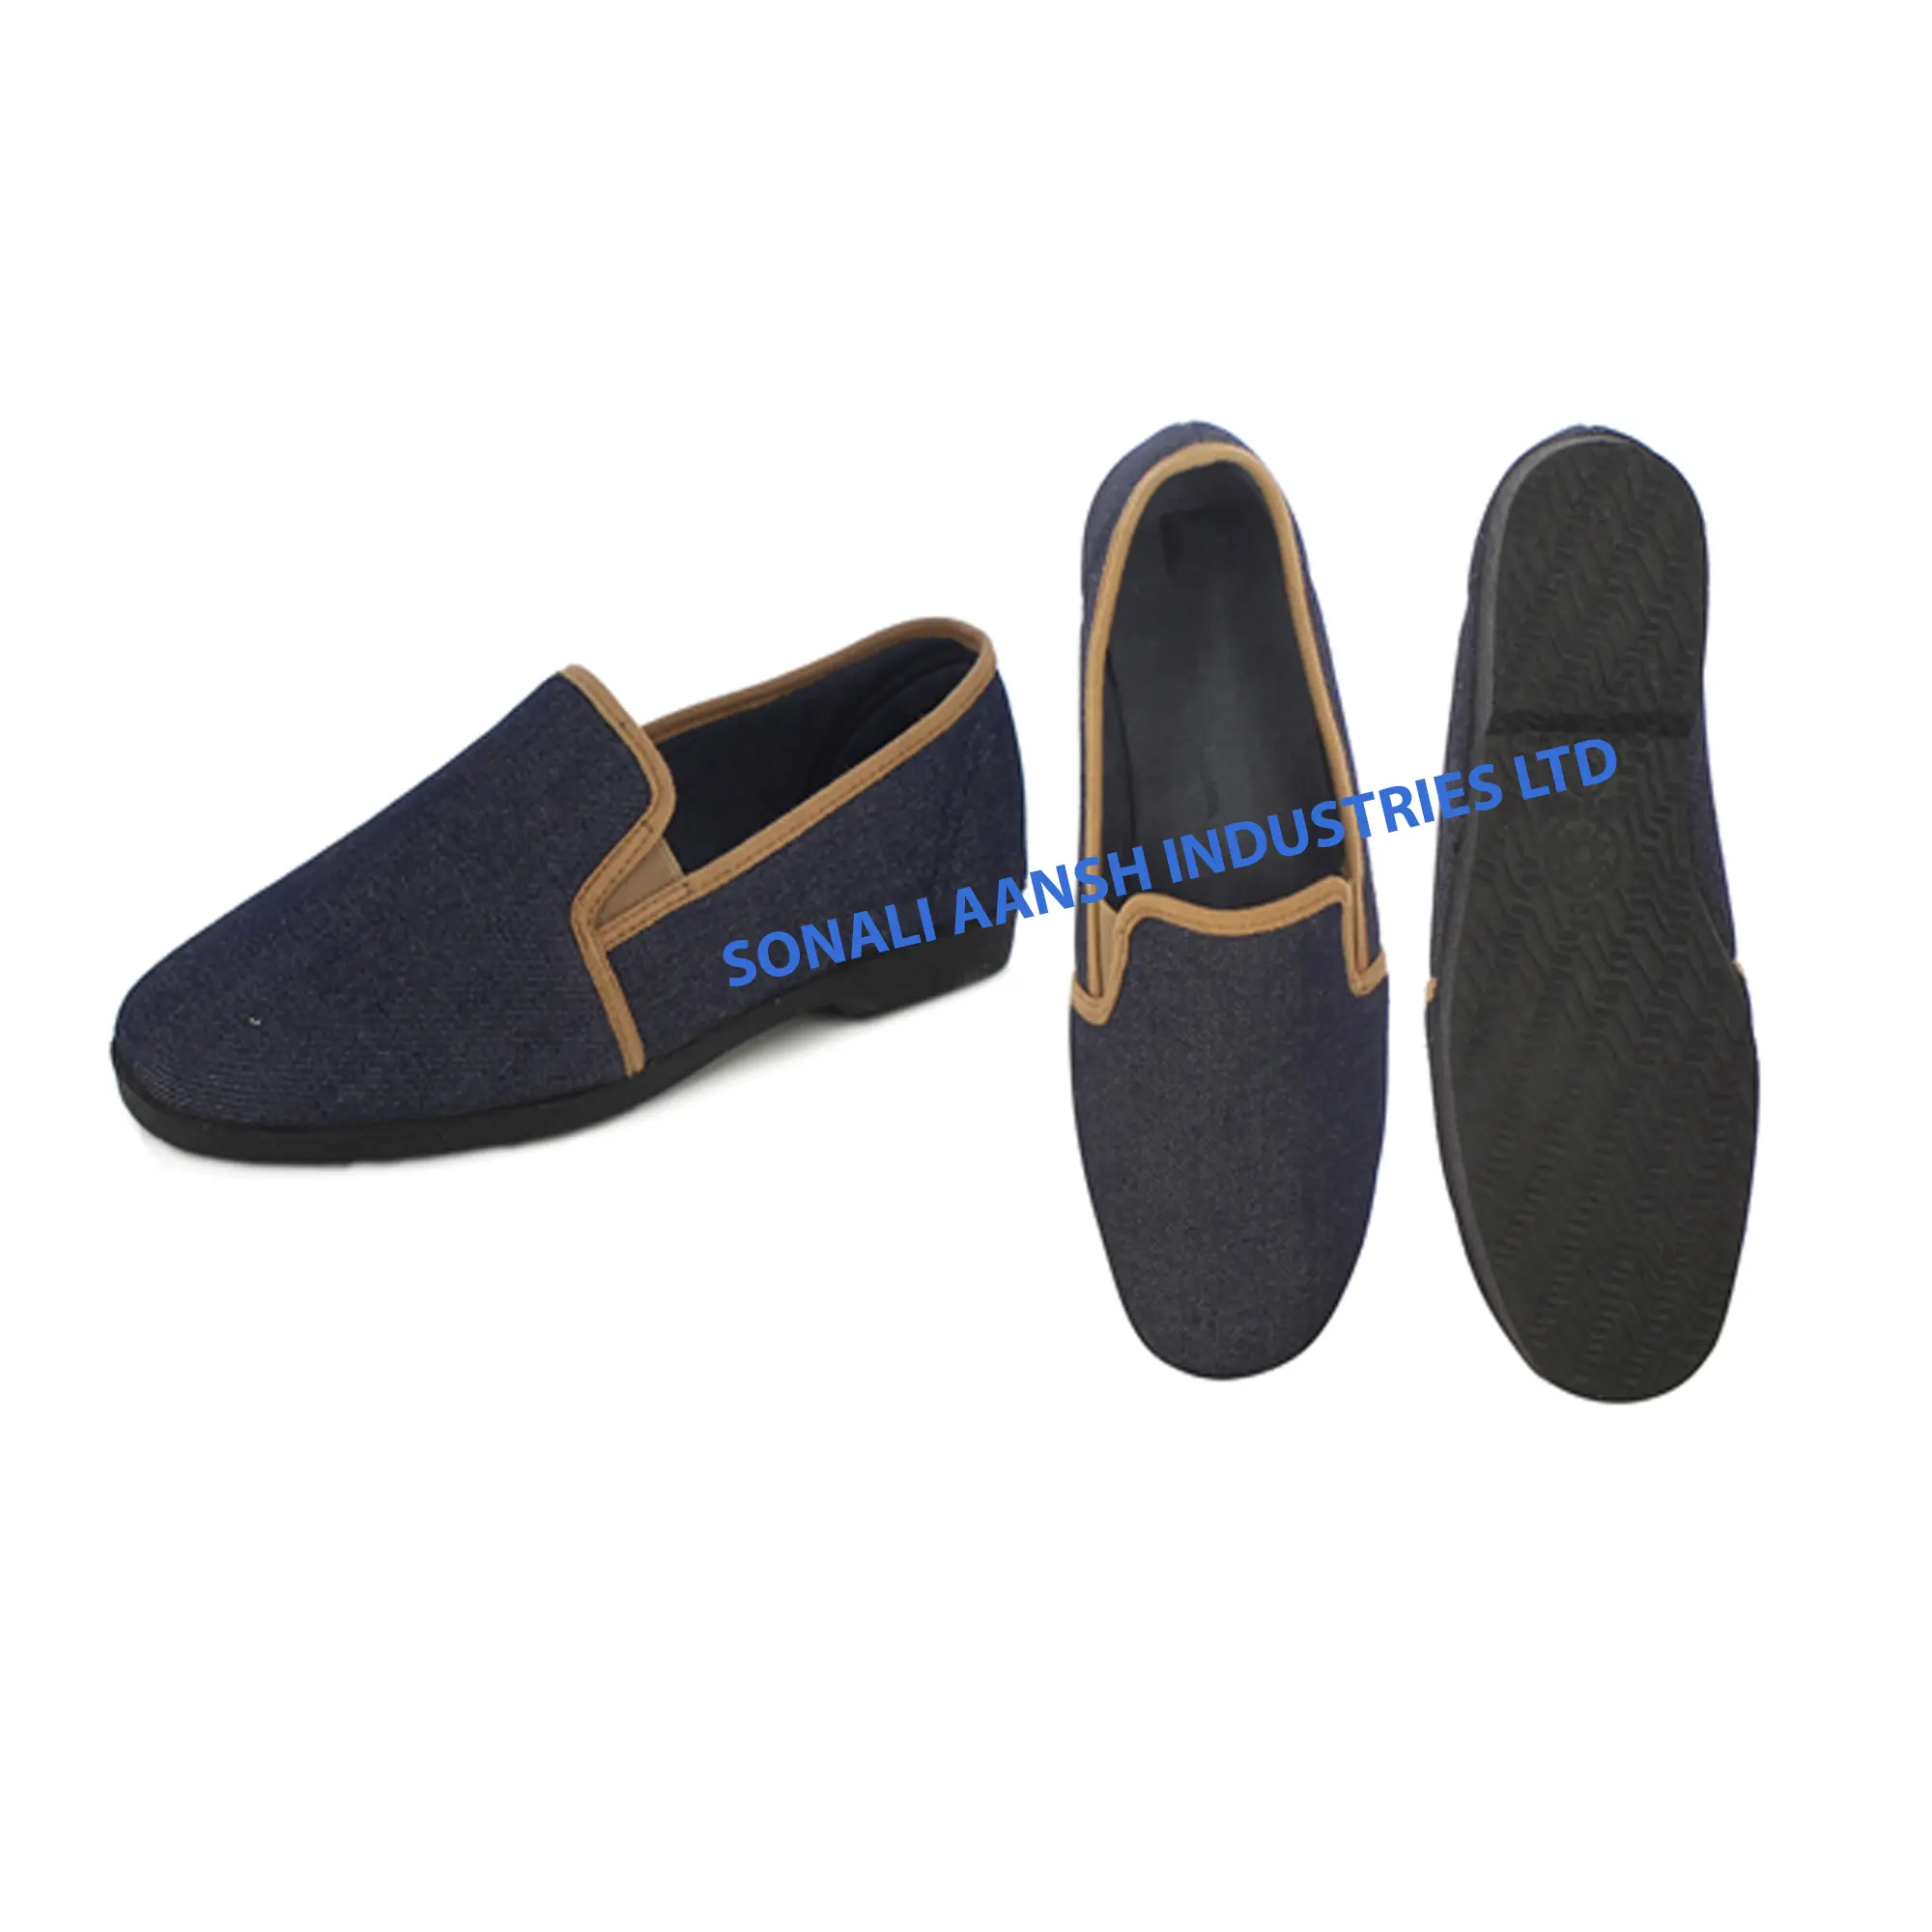 حذاء رياضي مسطح مصنوع من القماش بتصميم مخصص للسيدات من بنغلاديش للبيع بالجملة من المصنع مباشرةً من المُصنع الأصلي وهو الأعلى مبيعًا ورخيص الثمن